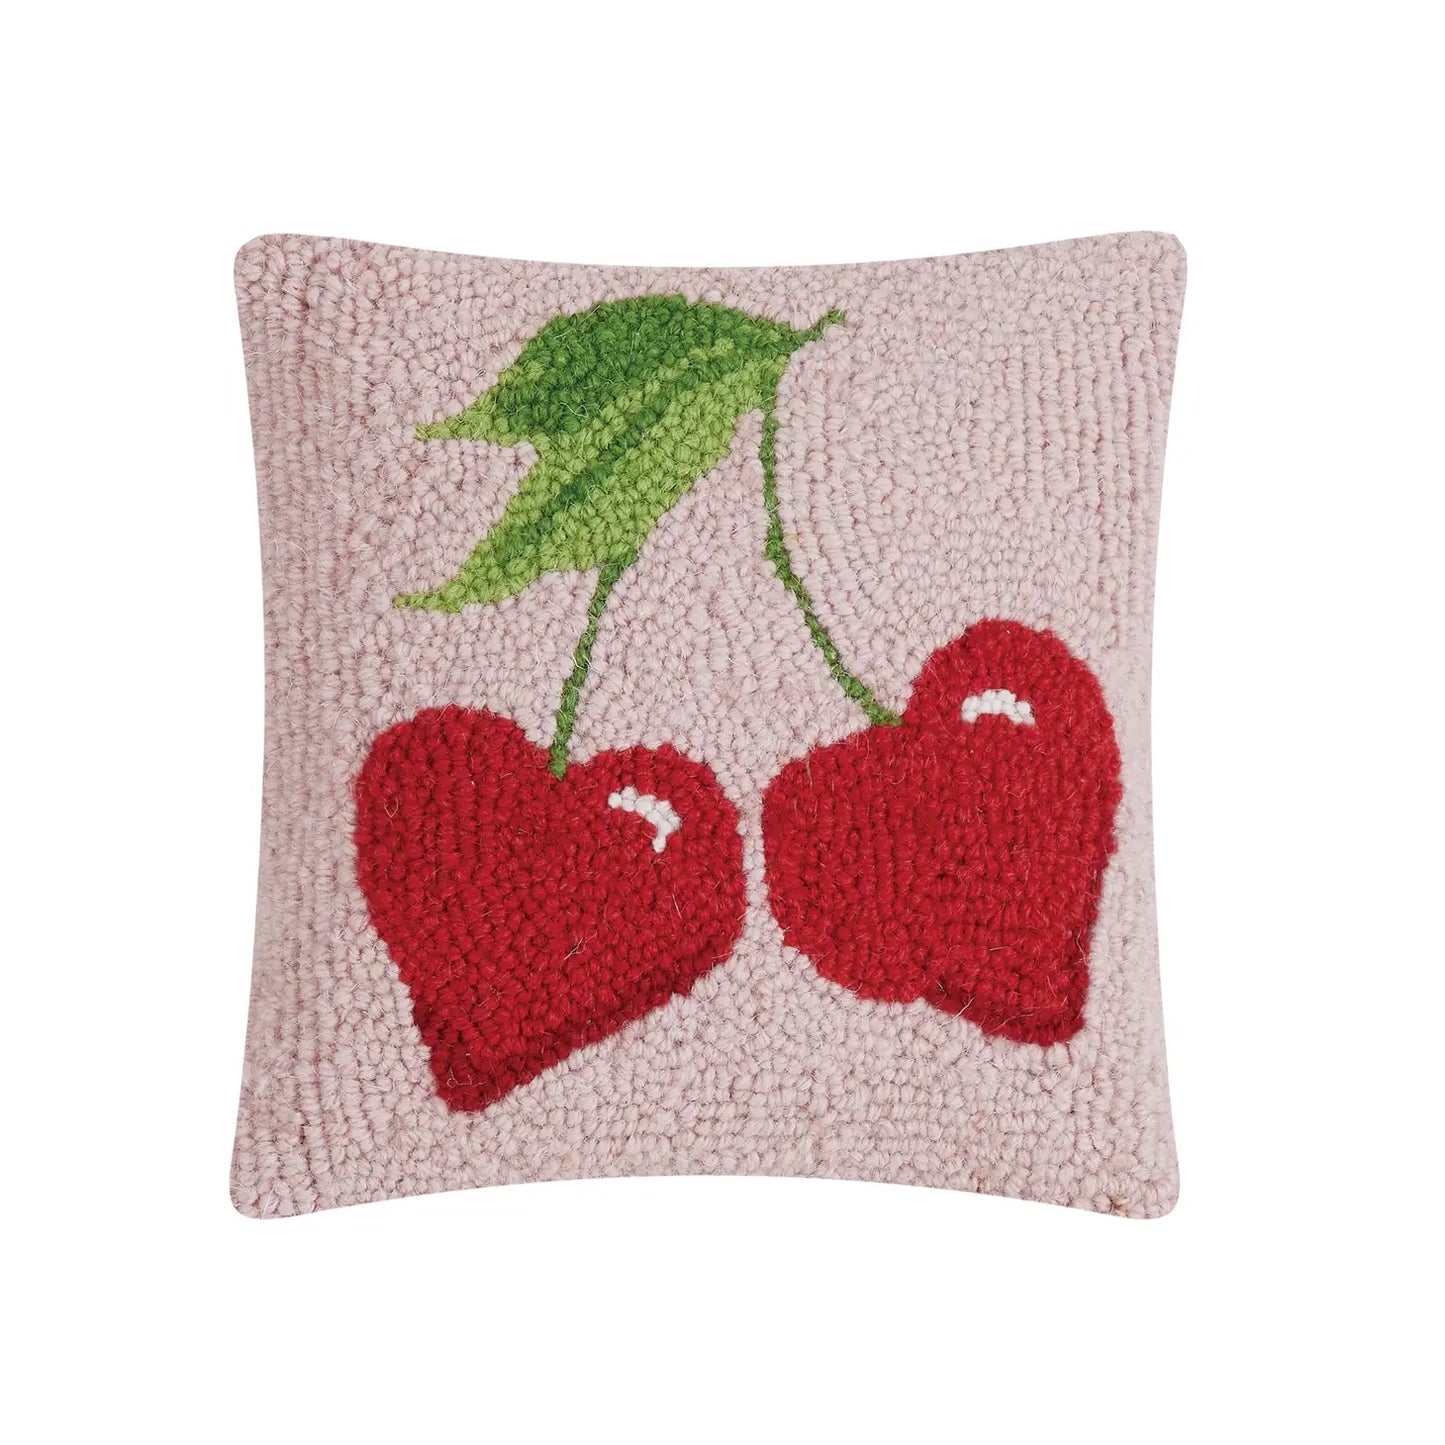 Cherry Hearts Small Cushion